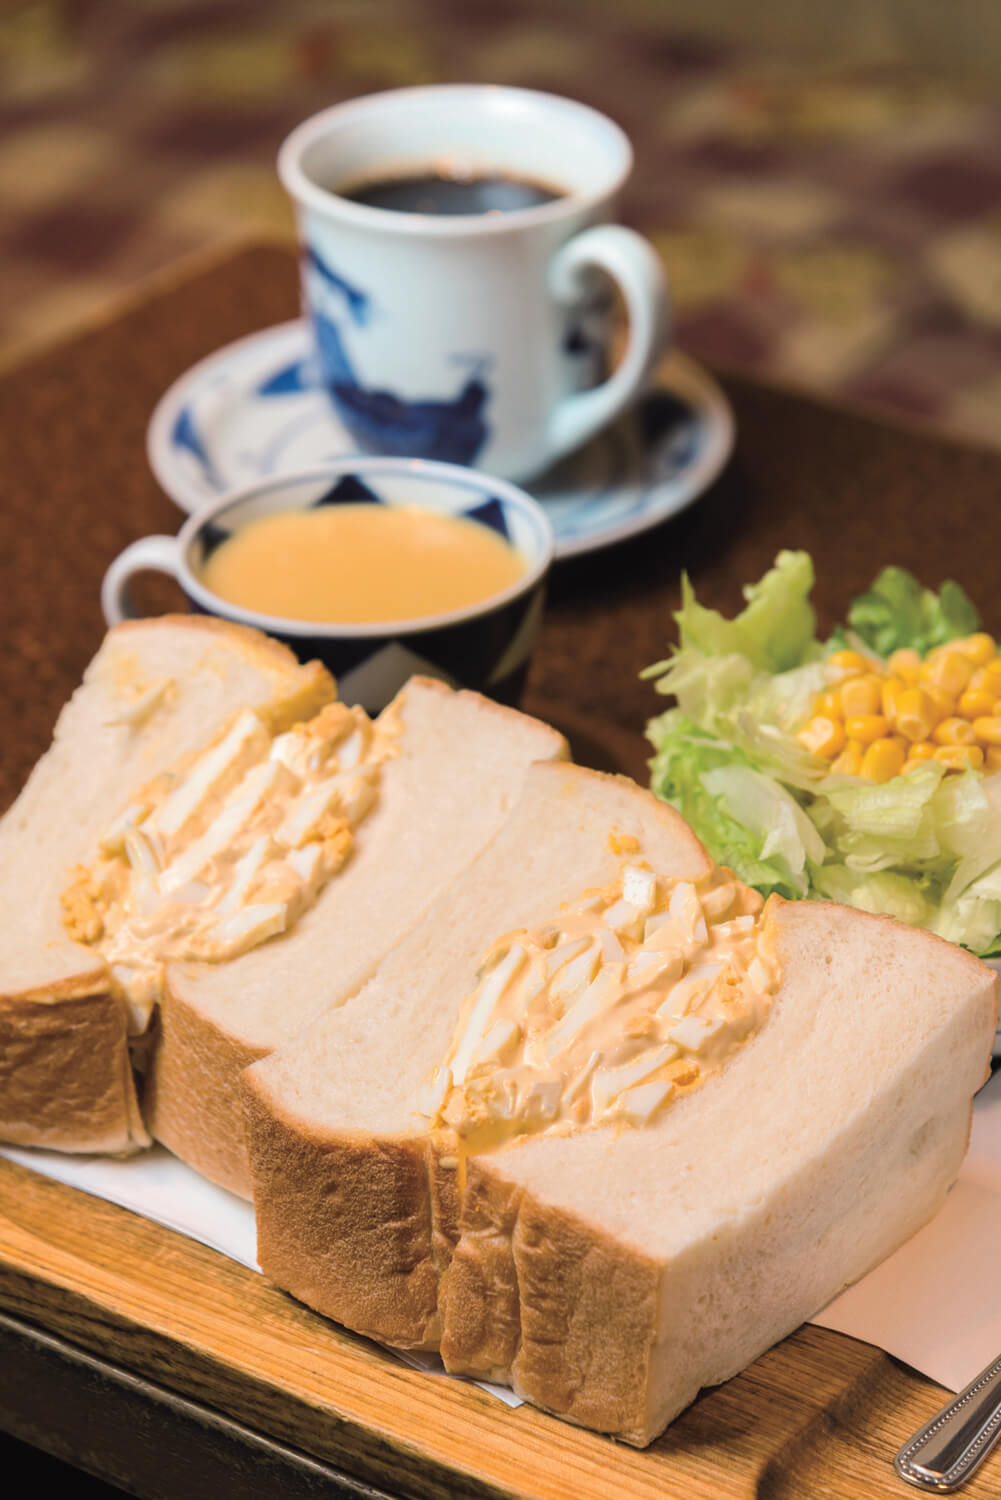 サンドイッチセット1200円は山盛りサラダと濃厚スープ、飲み物付き。